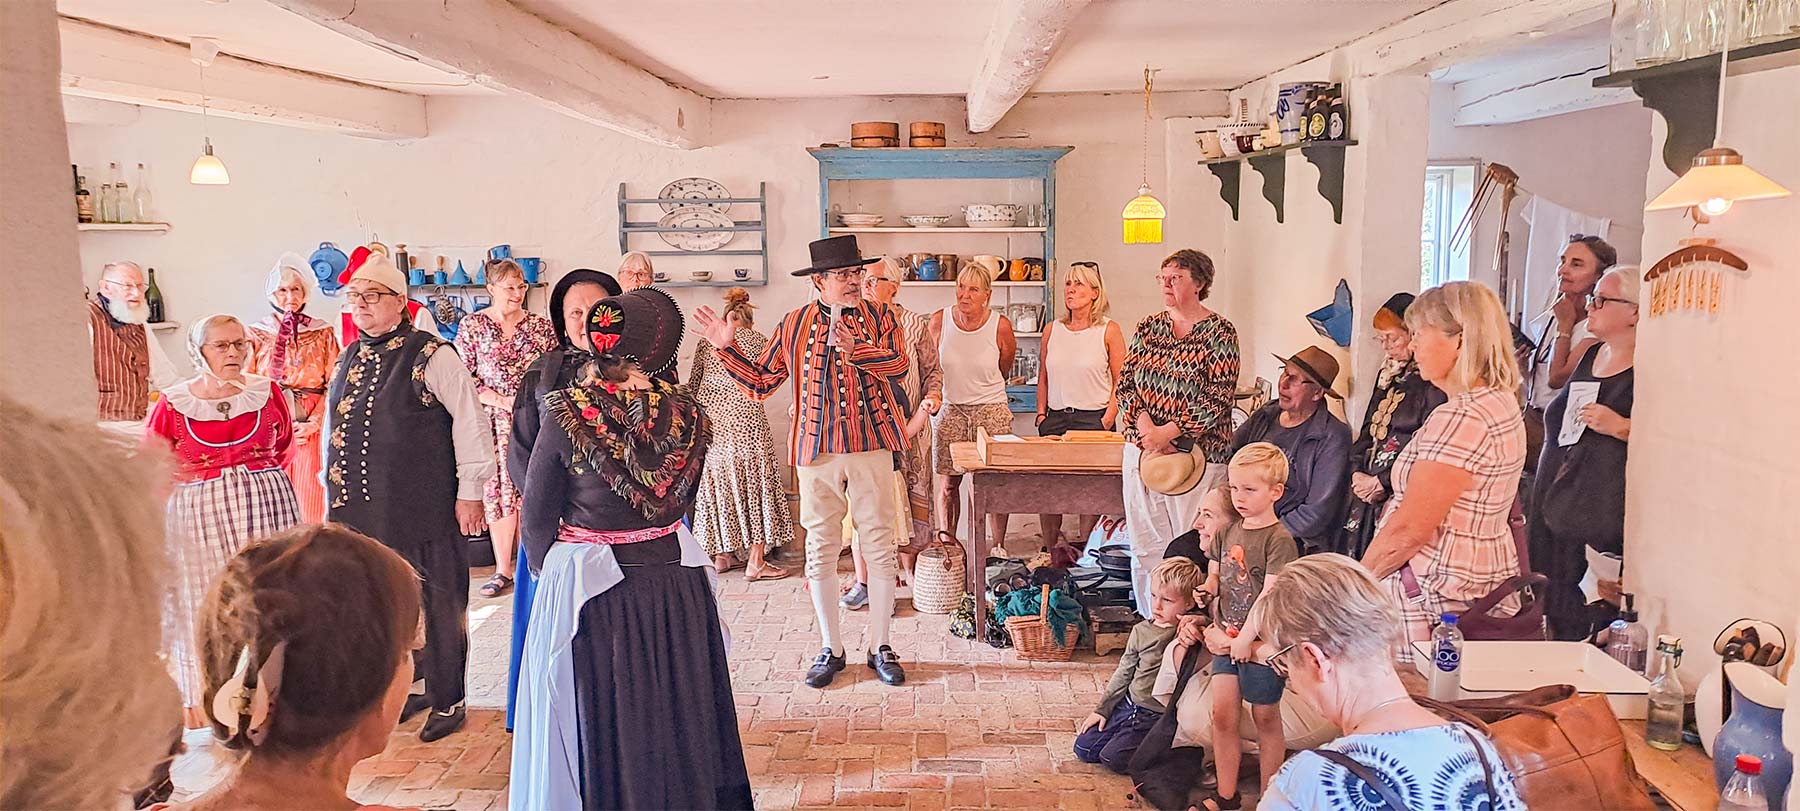 Folkedansere viser dans i sommerkøkkenet på Amagermuseet. Foto: Museum Amager.